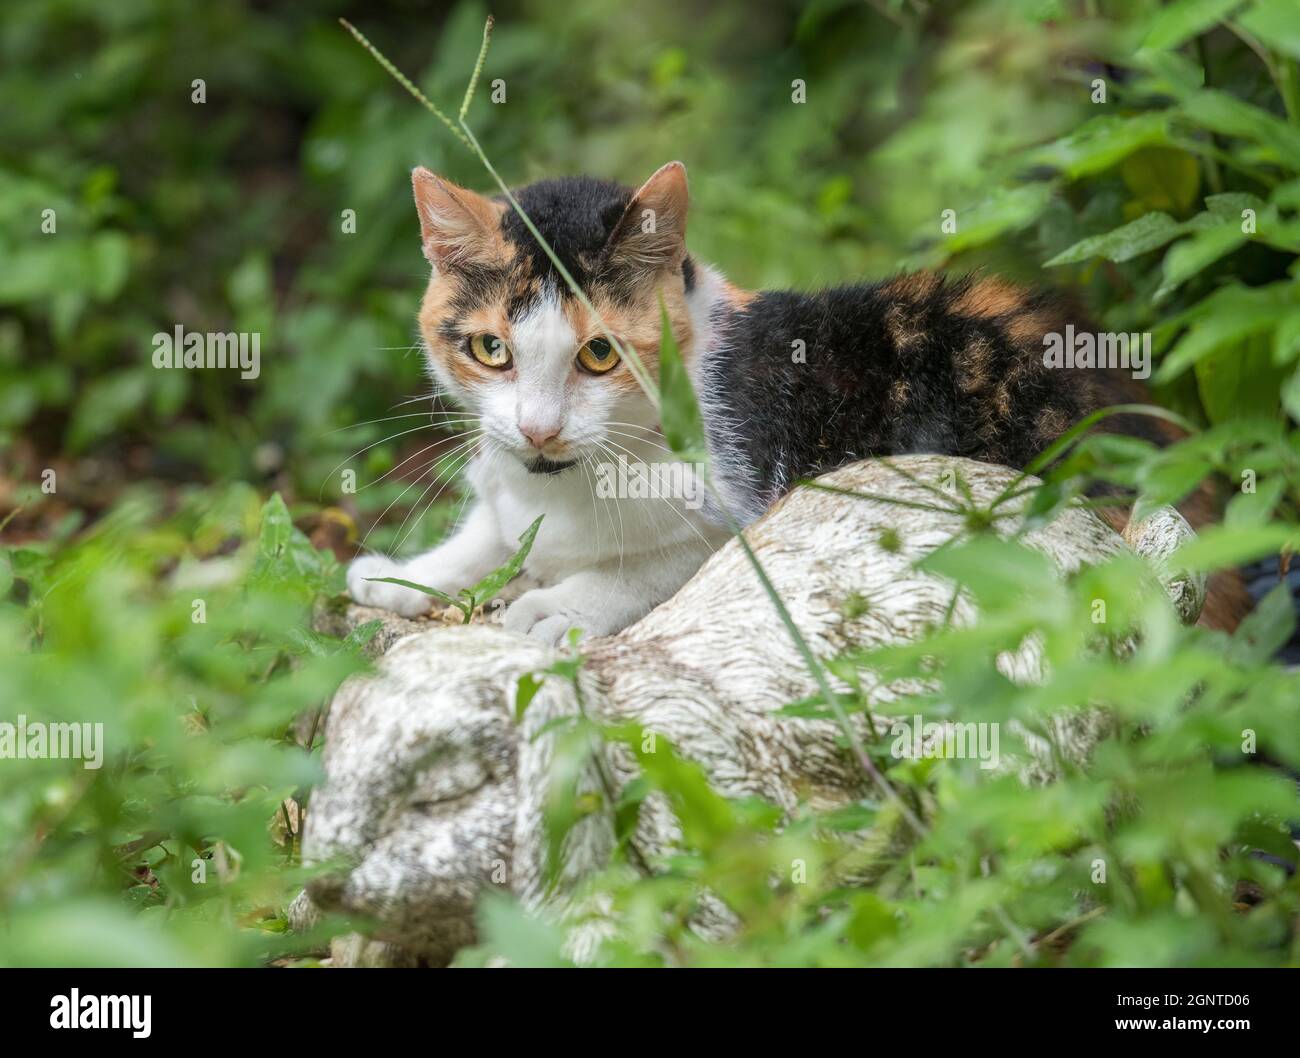 Gatto calico ferale in giardino all'aperto Foto Stock